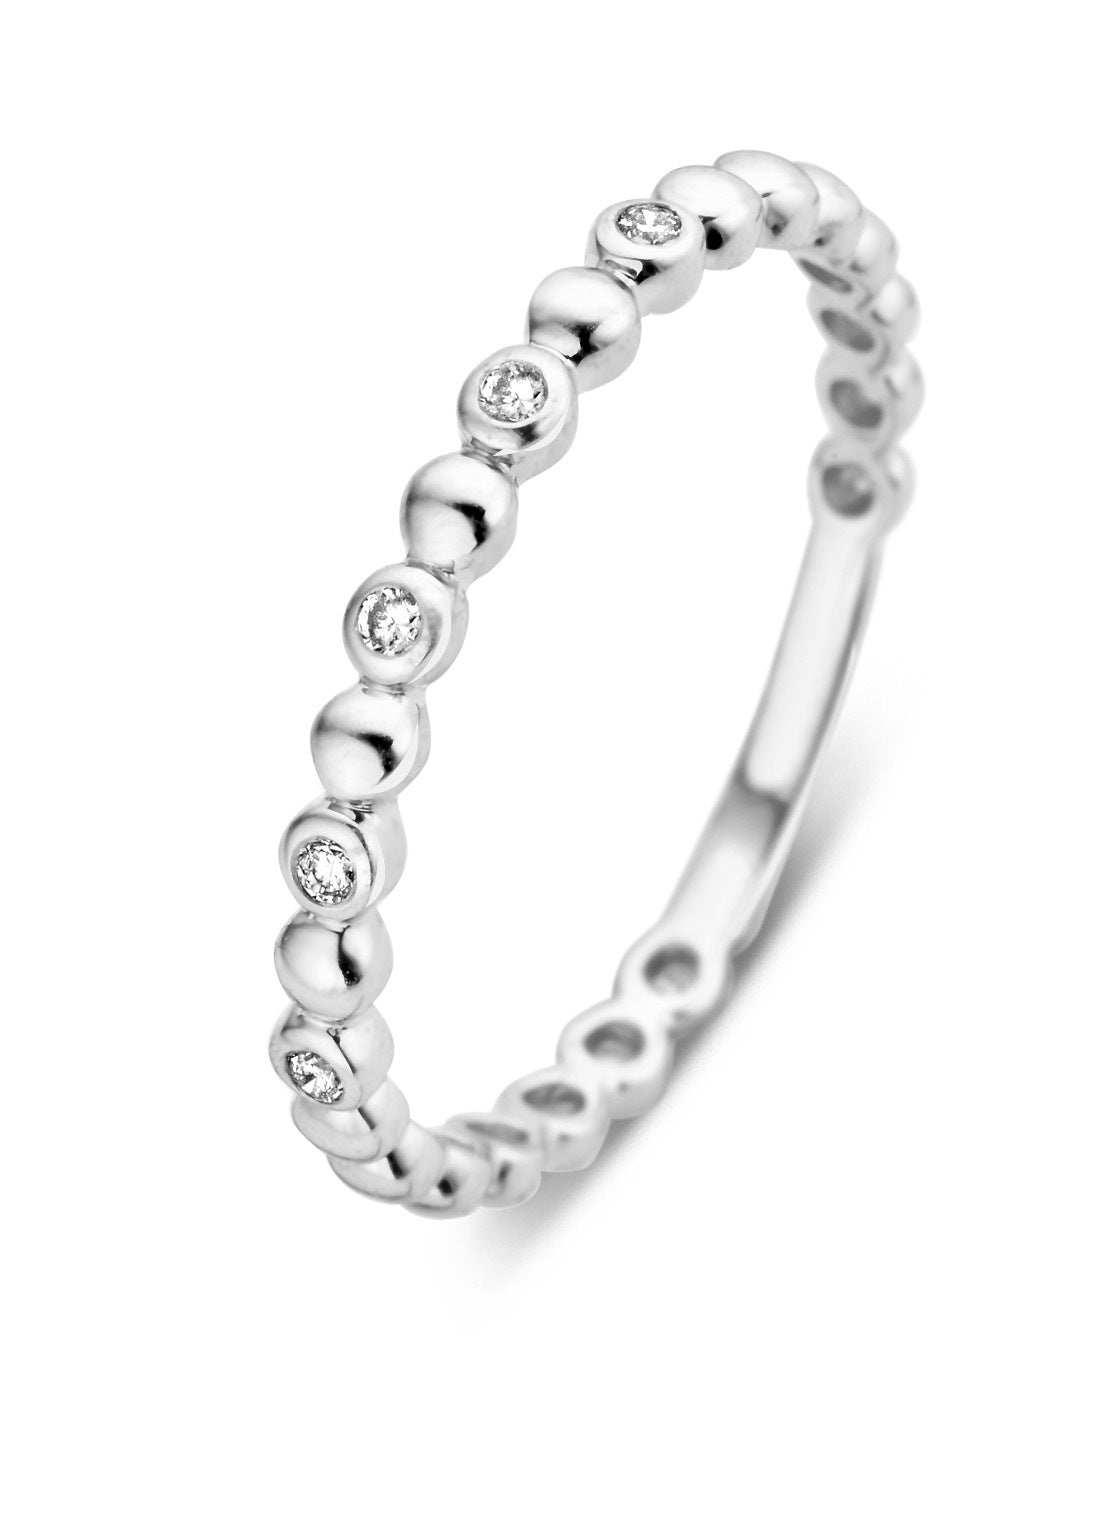 White gold ring, 0.05 ct diamond, ensemble